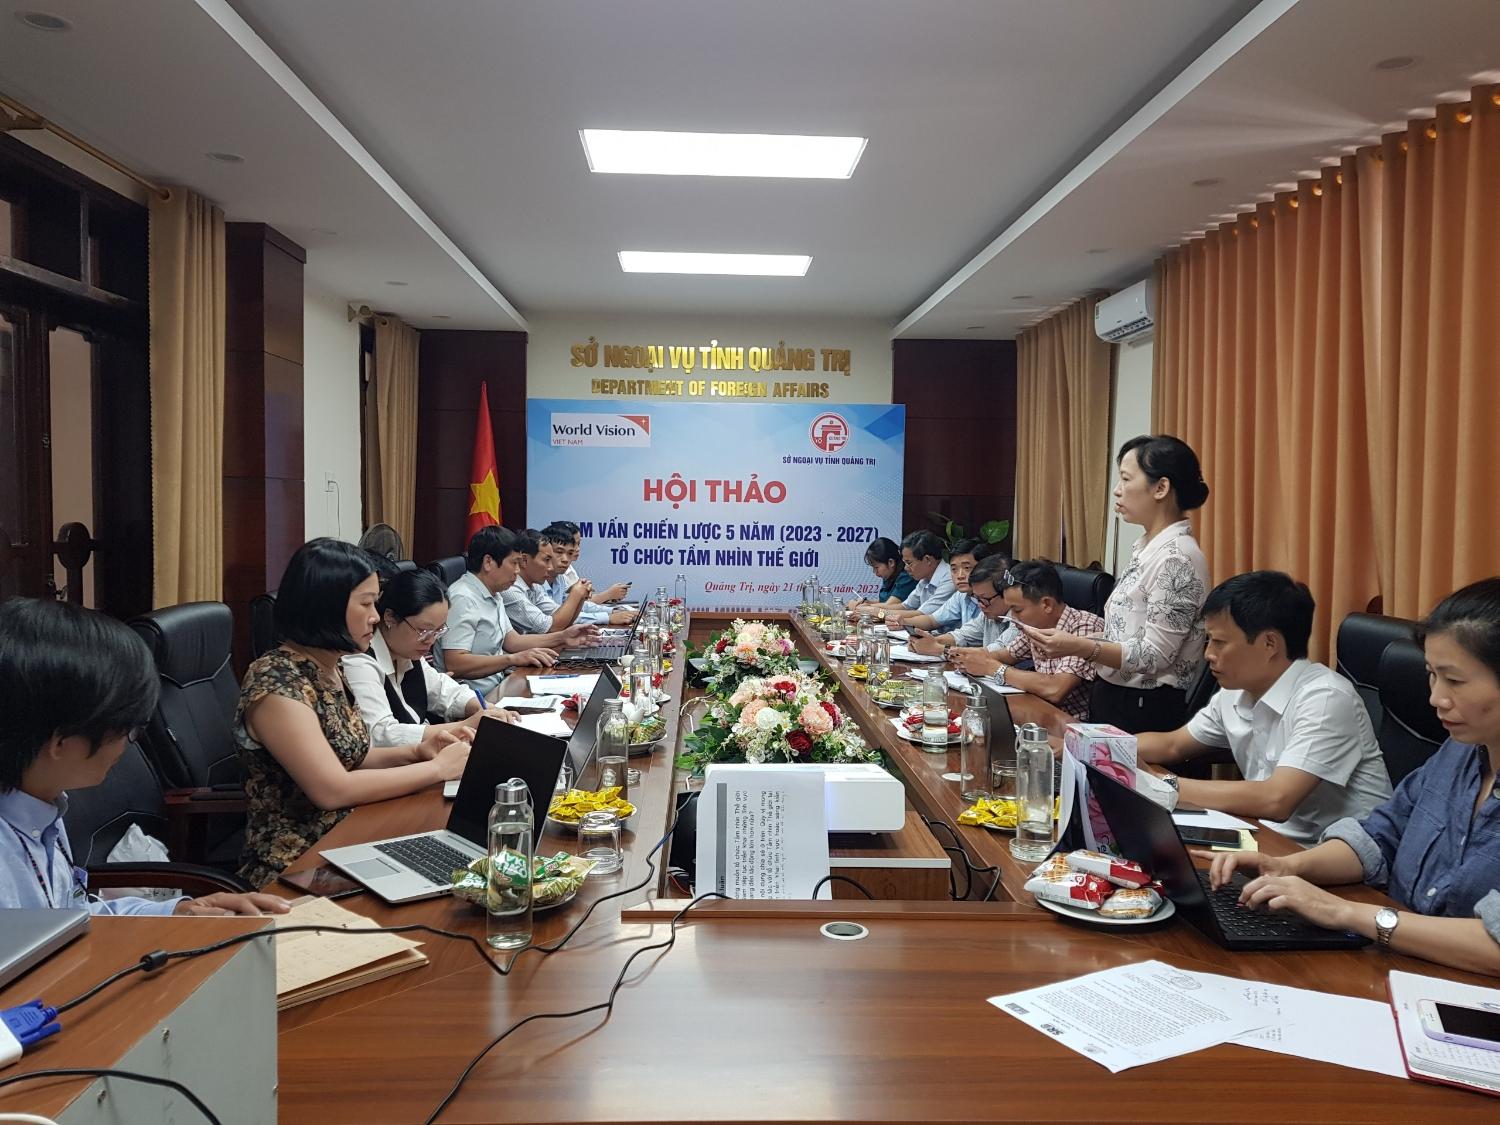 Hội thảo tham vấn chiến lược 5 năm (2023-2027) tổ chức Tầm nhìn Thế giới (WVI) tại tỉnh Quảng Trị